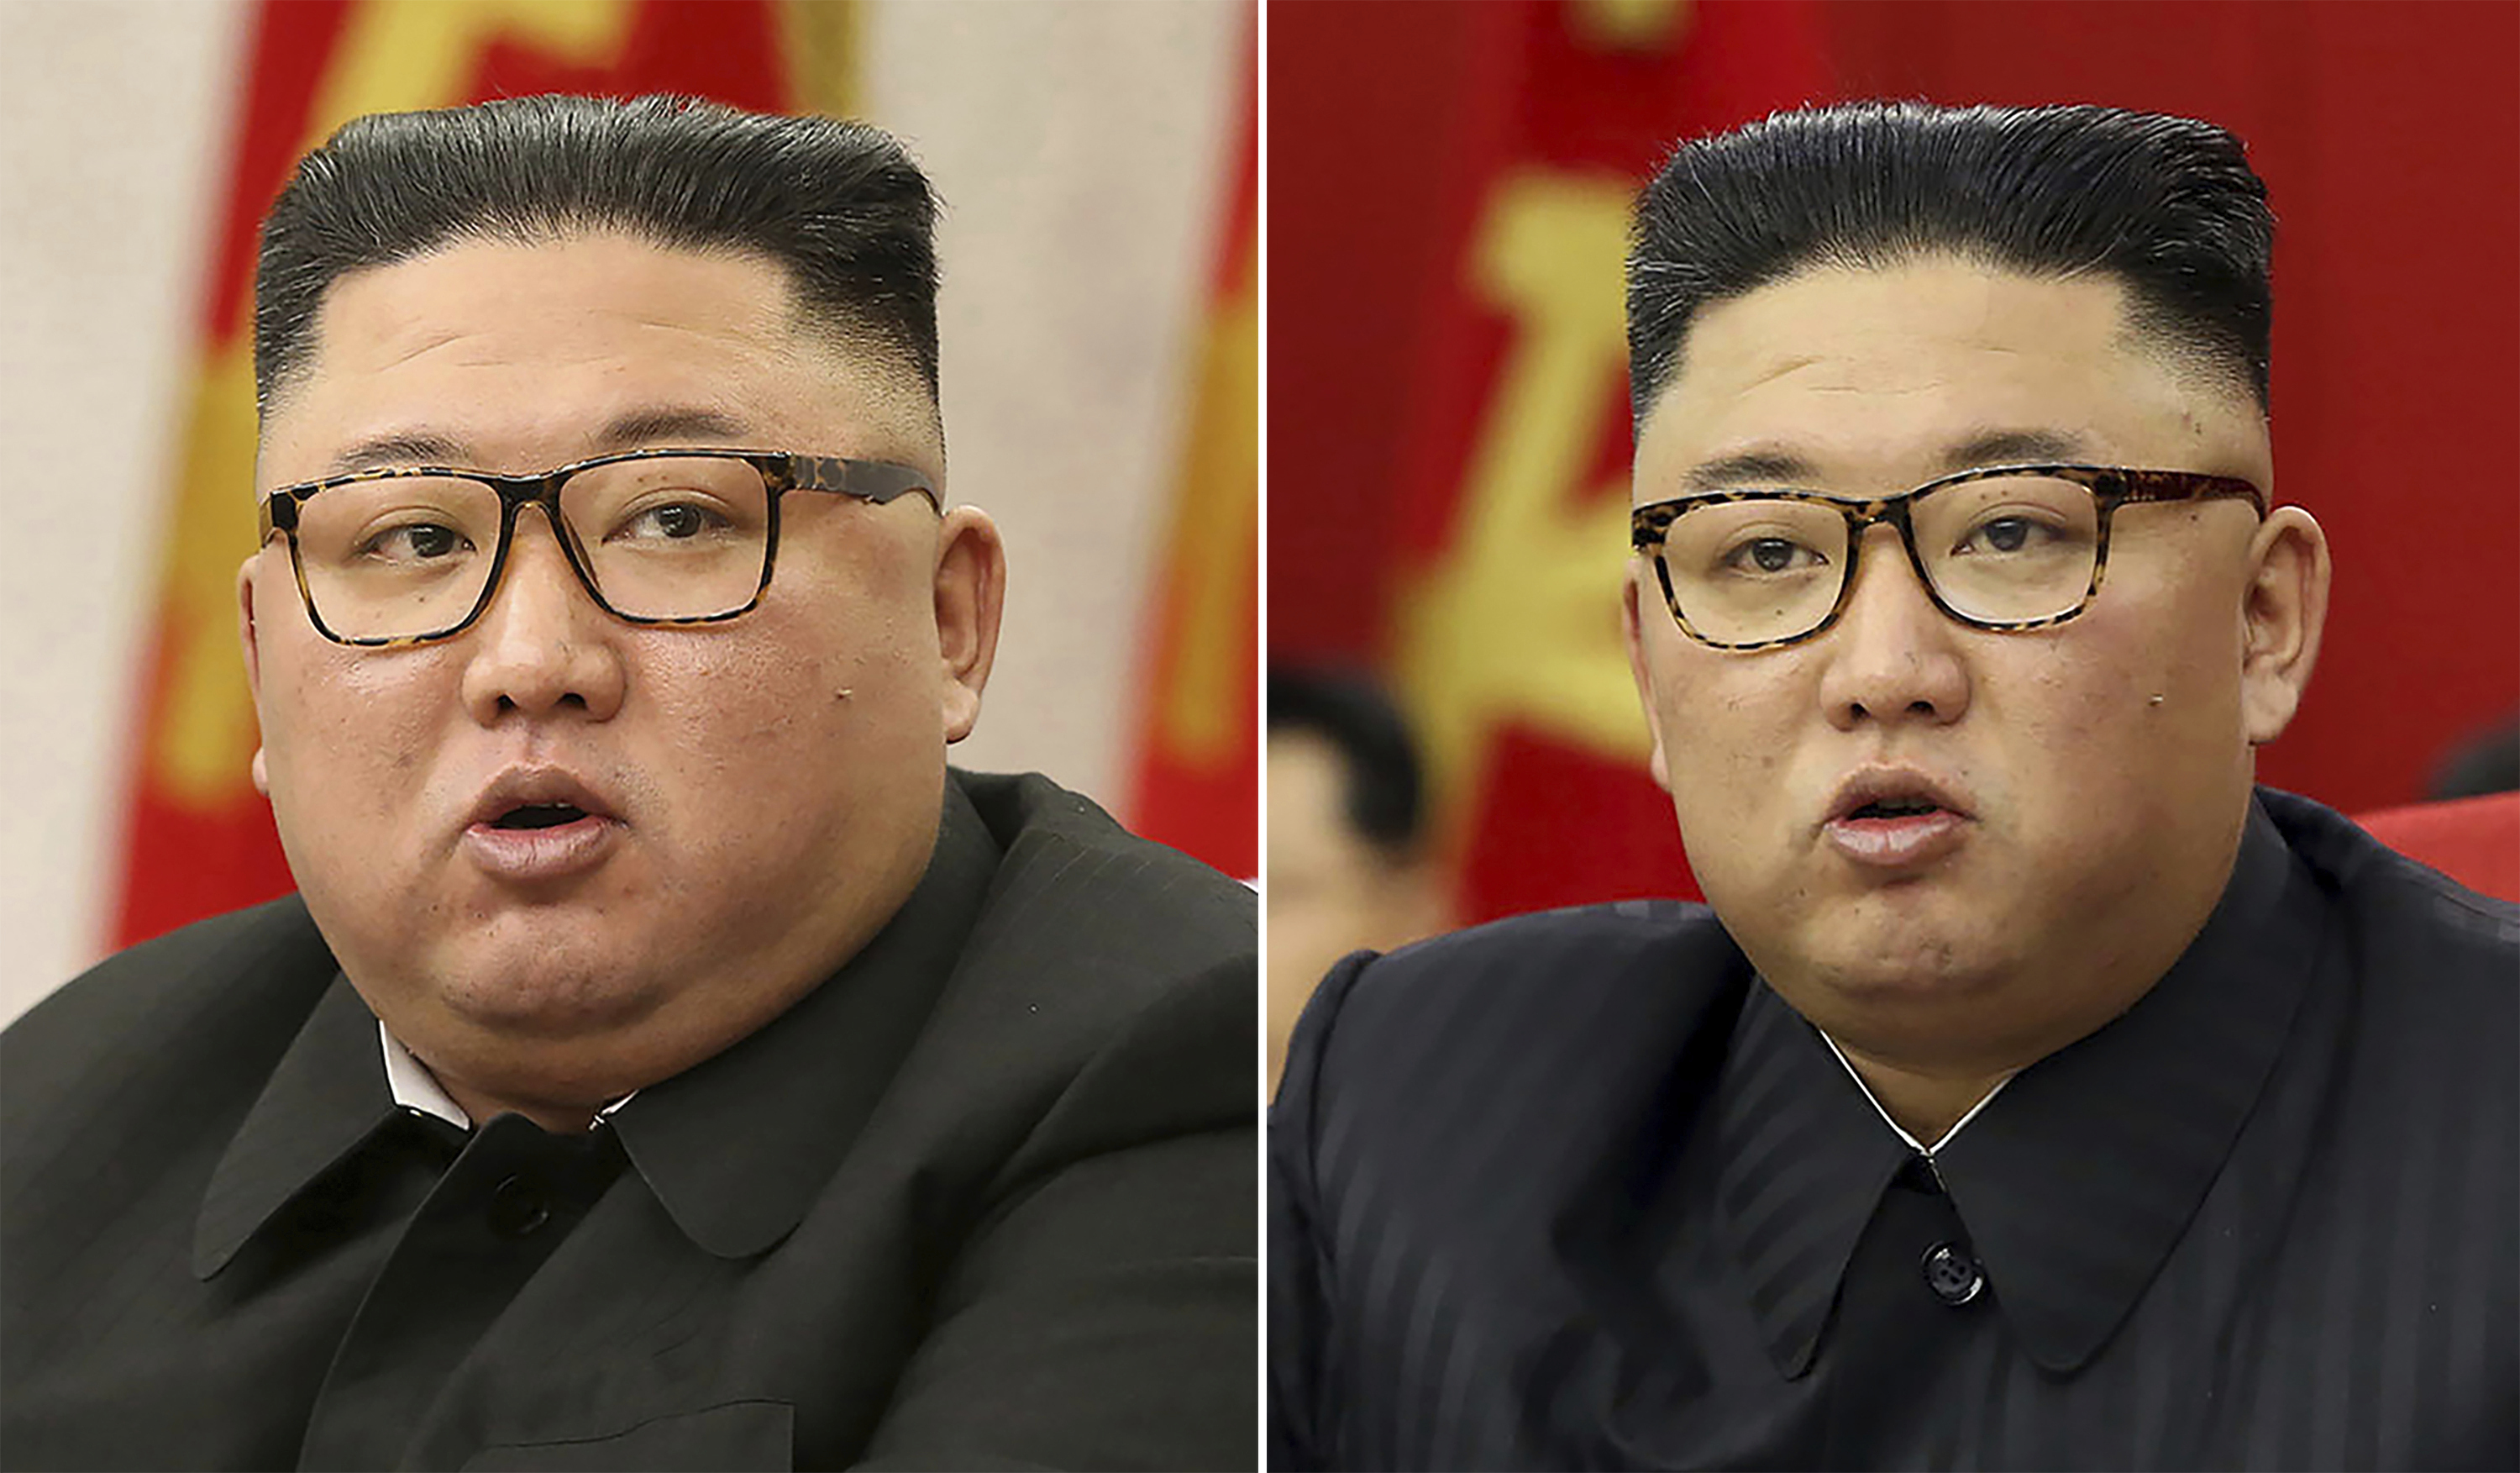 Fotos muestran el cambio físico del líder norcoreano Kim Jong-un tras rebajar 44 libras